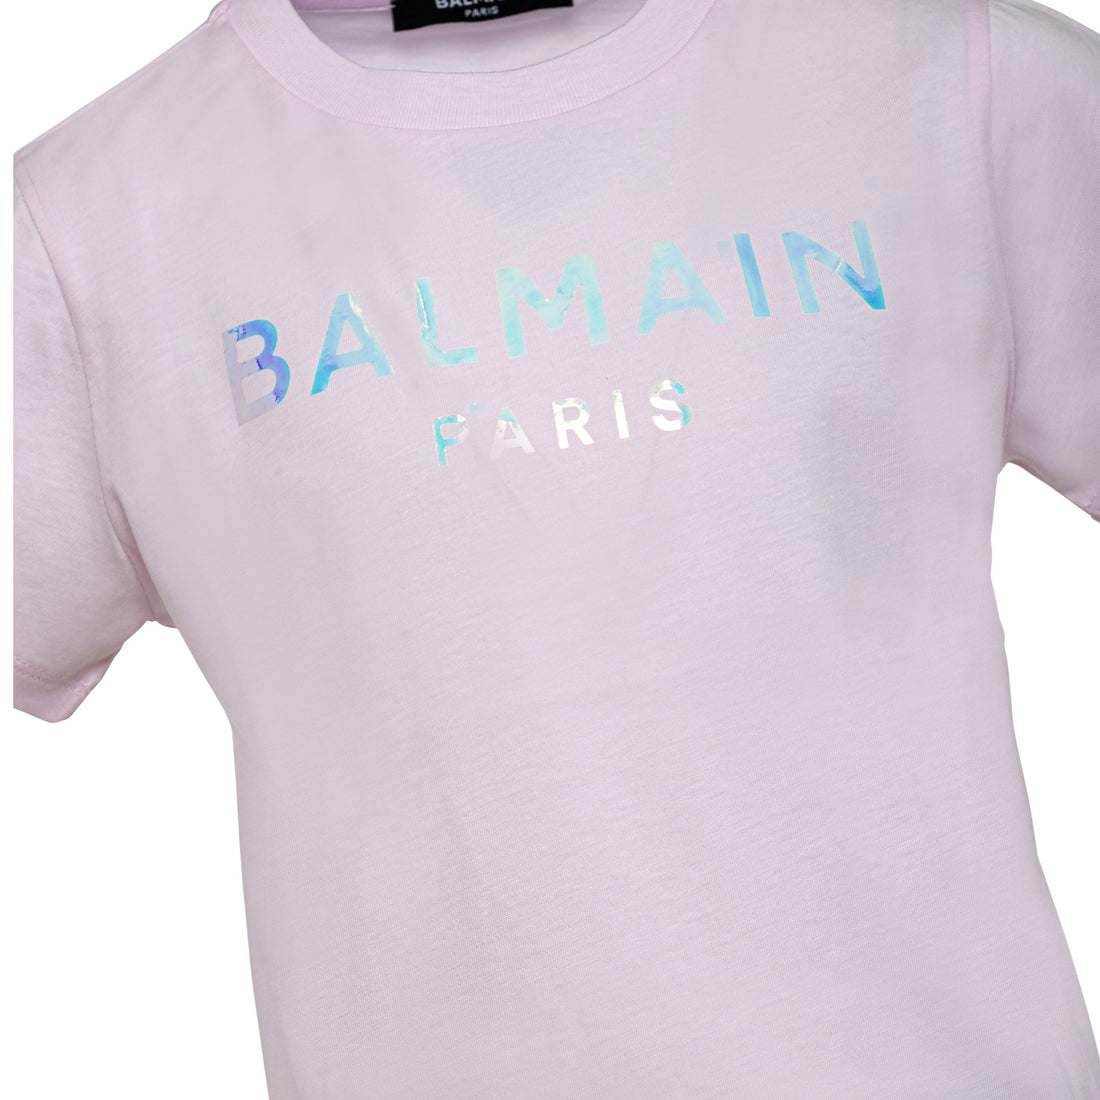 Balmain T-Shirt/Top Style: Bs8A41540